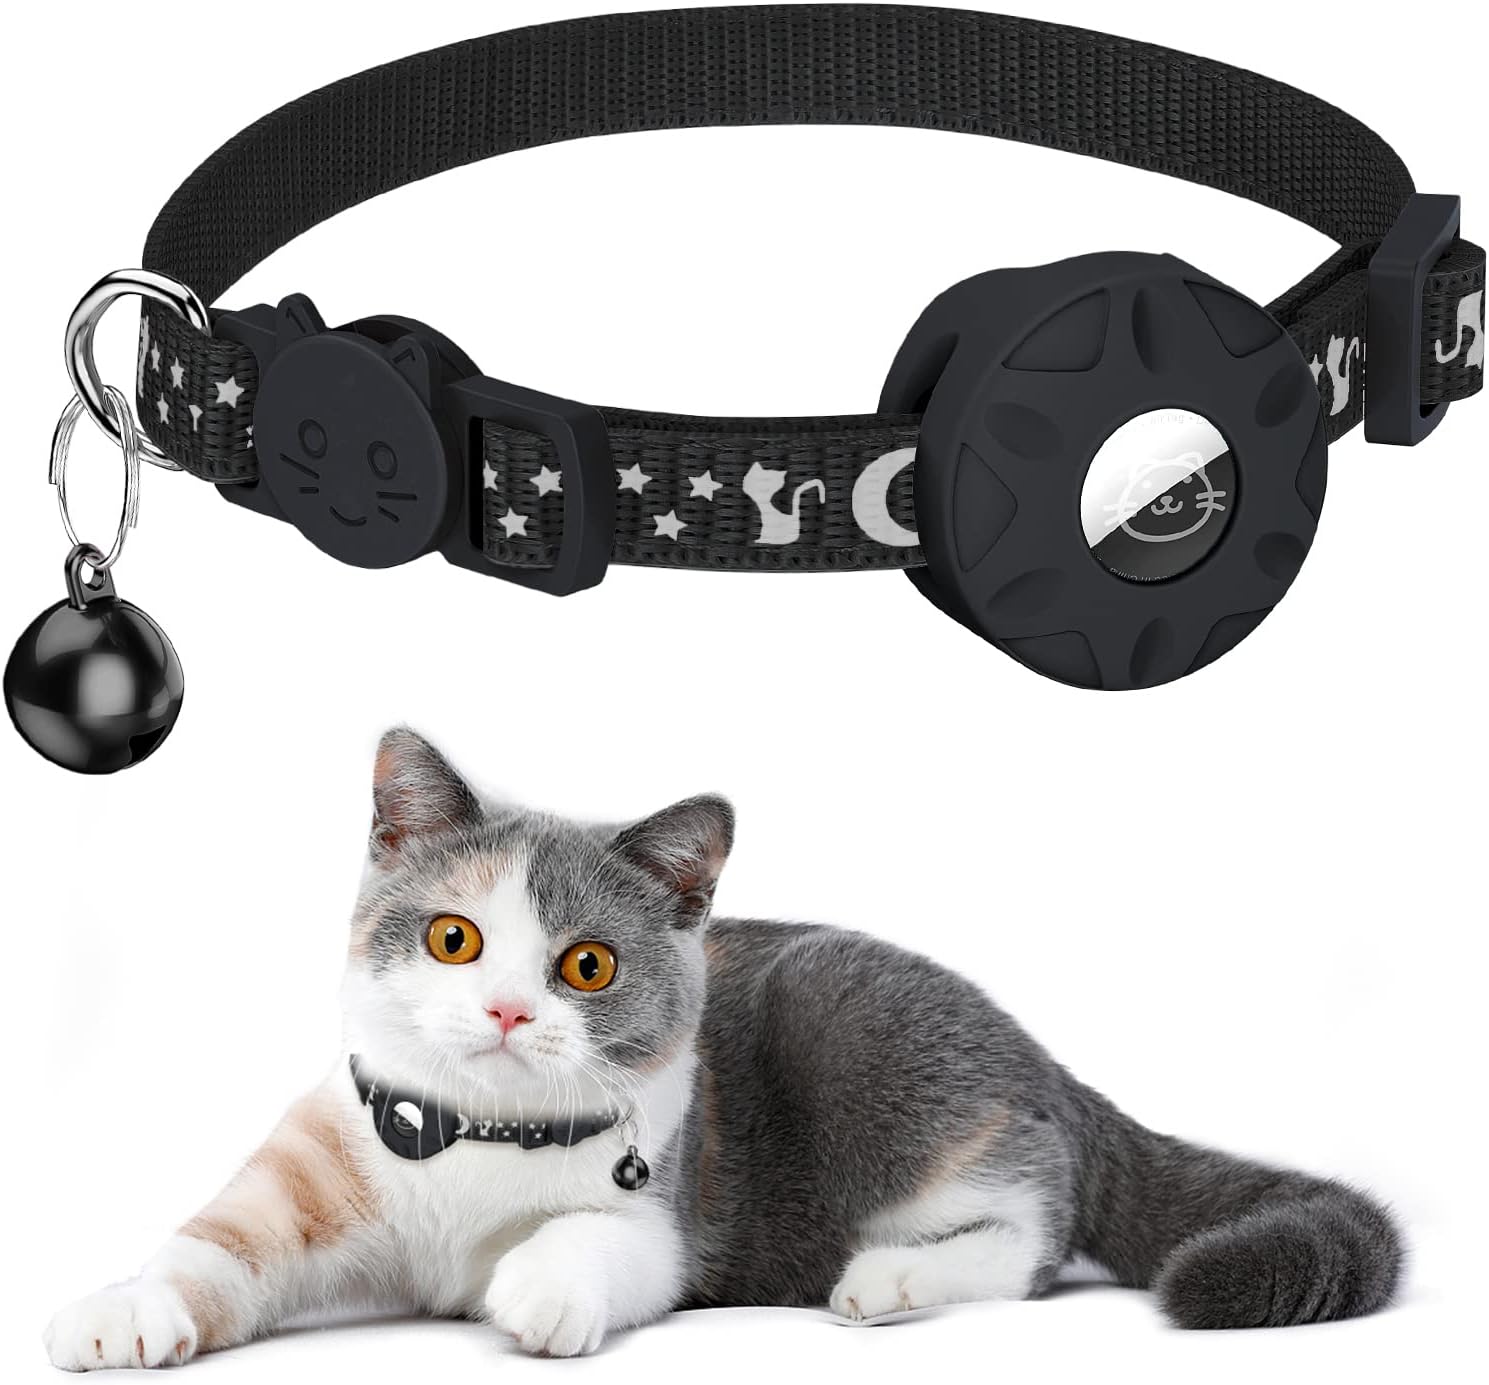 Katze mit Halsband mit AirTag und Glocke